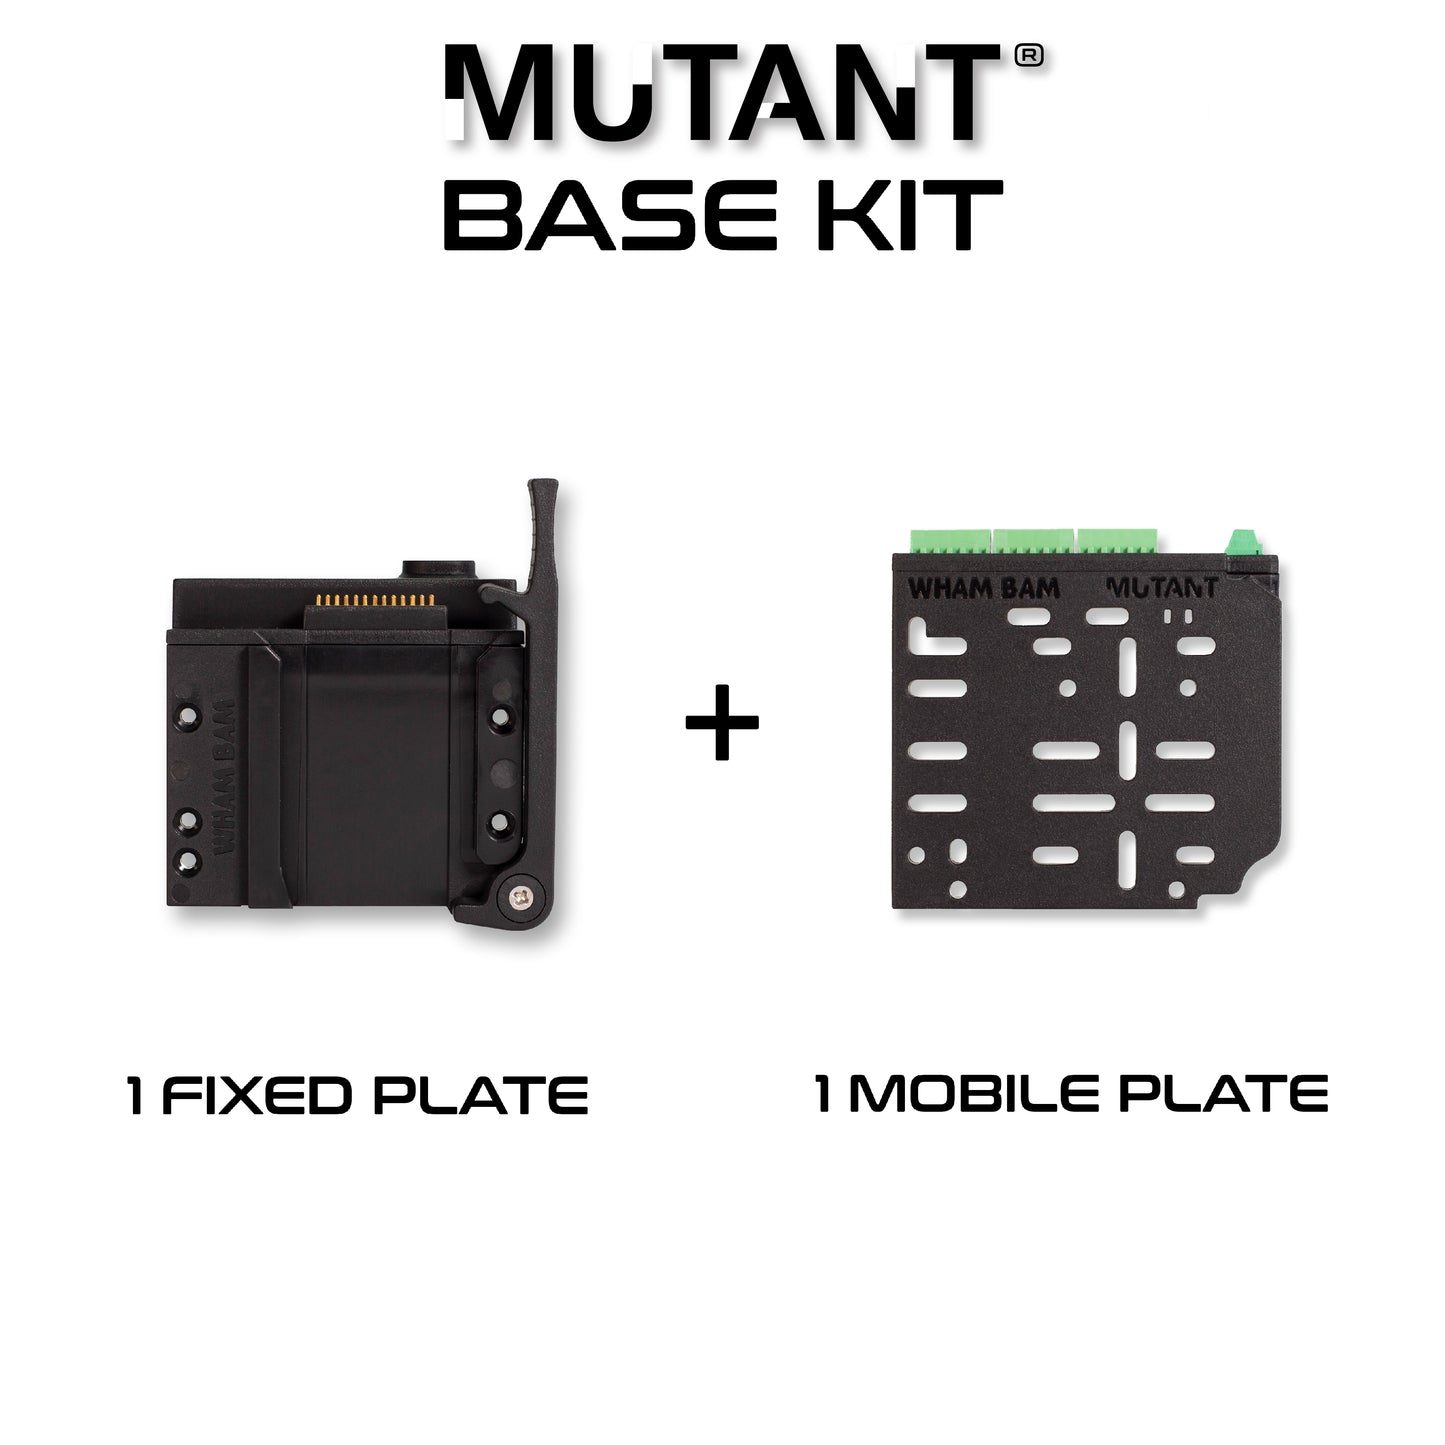 the MUTANT V2 Kits